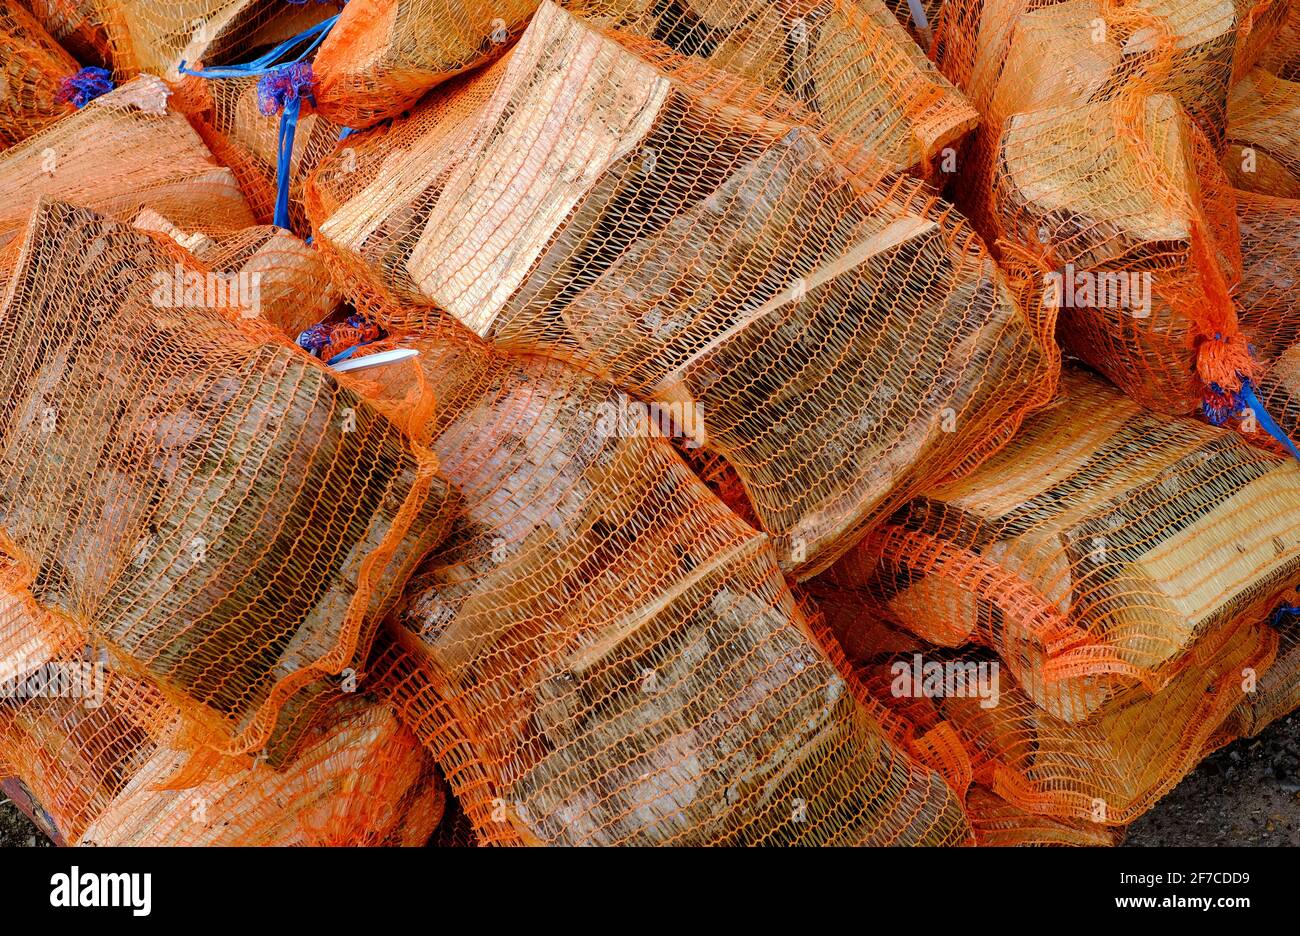 fasci di tronchi di legno tritato avvolti in rete arancione di plastica, norfolk, inghilterra Foto Stock